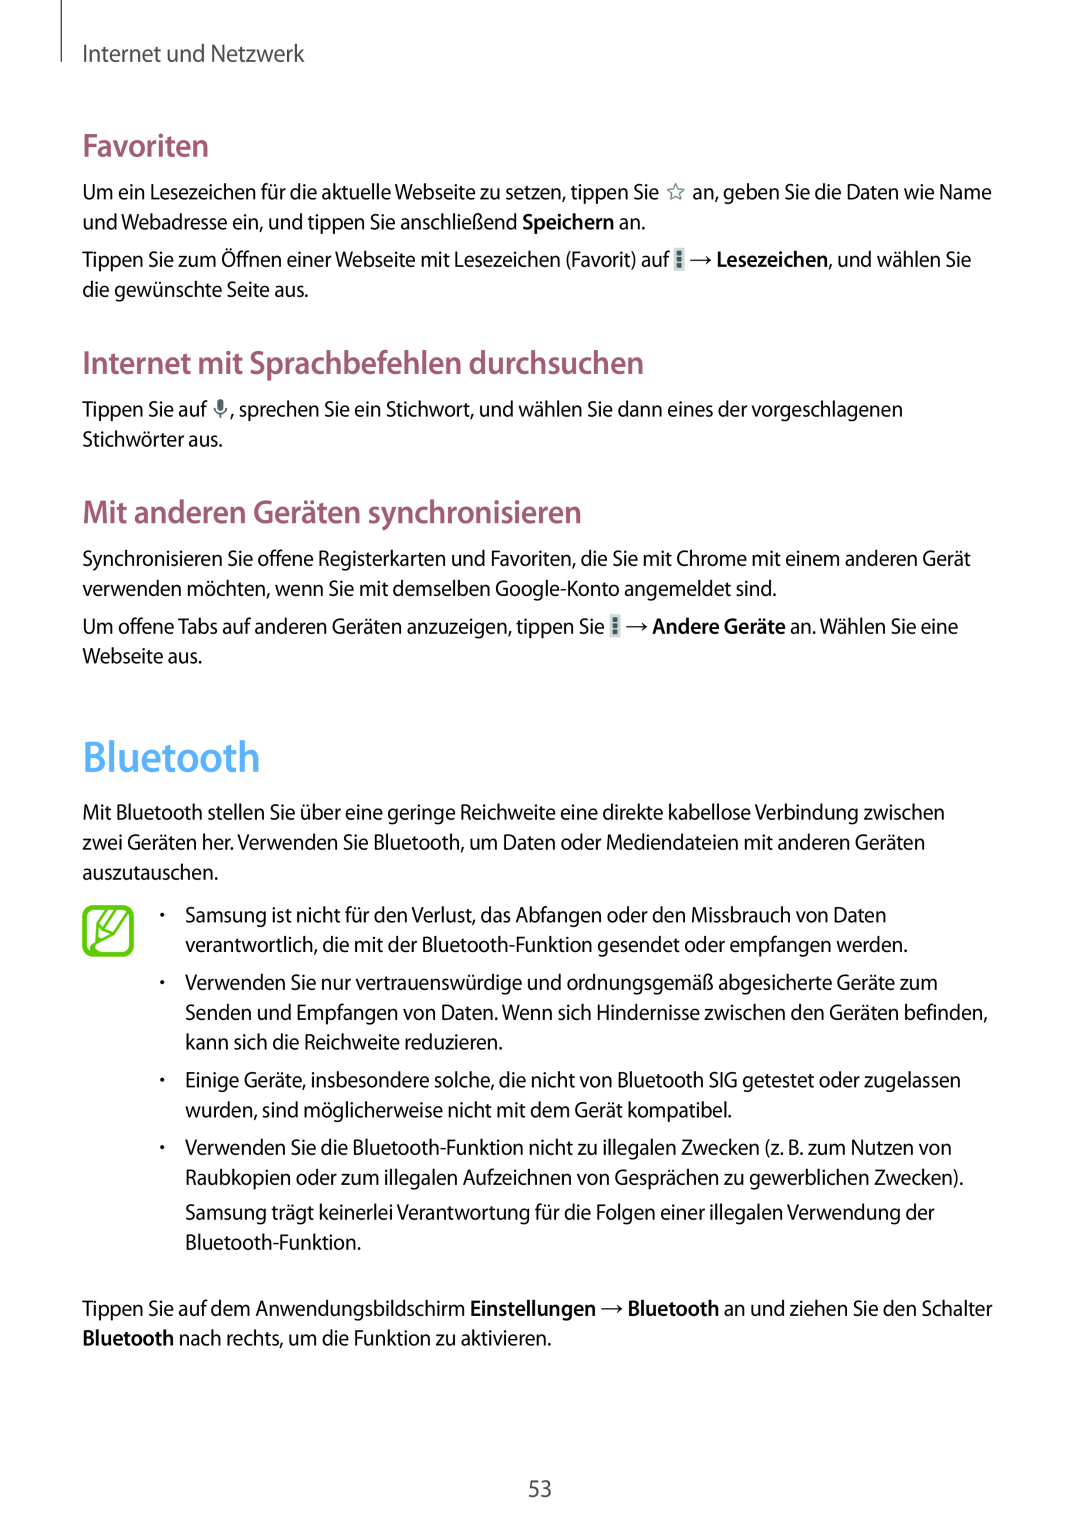 Samsung GT-P5220ZWADBT Bluetooth, Mit anderen Geräten synchronisieren, Favoriten, Internet mit Sprachbefehlen durchsuchen 